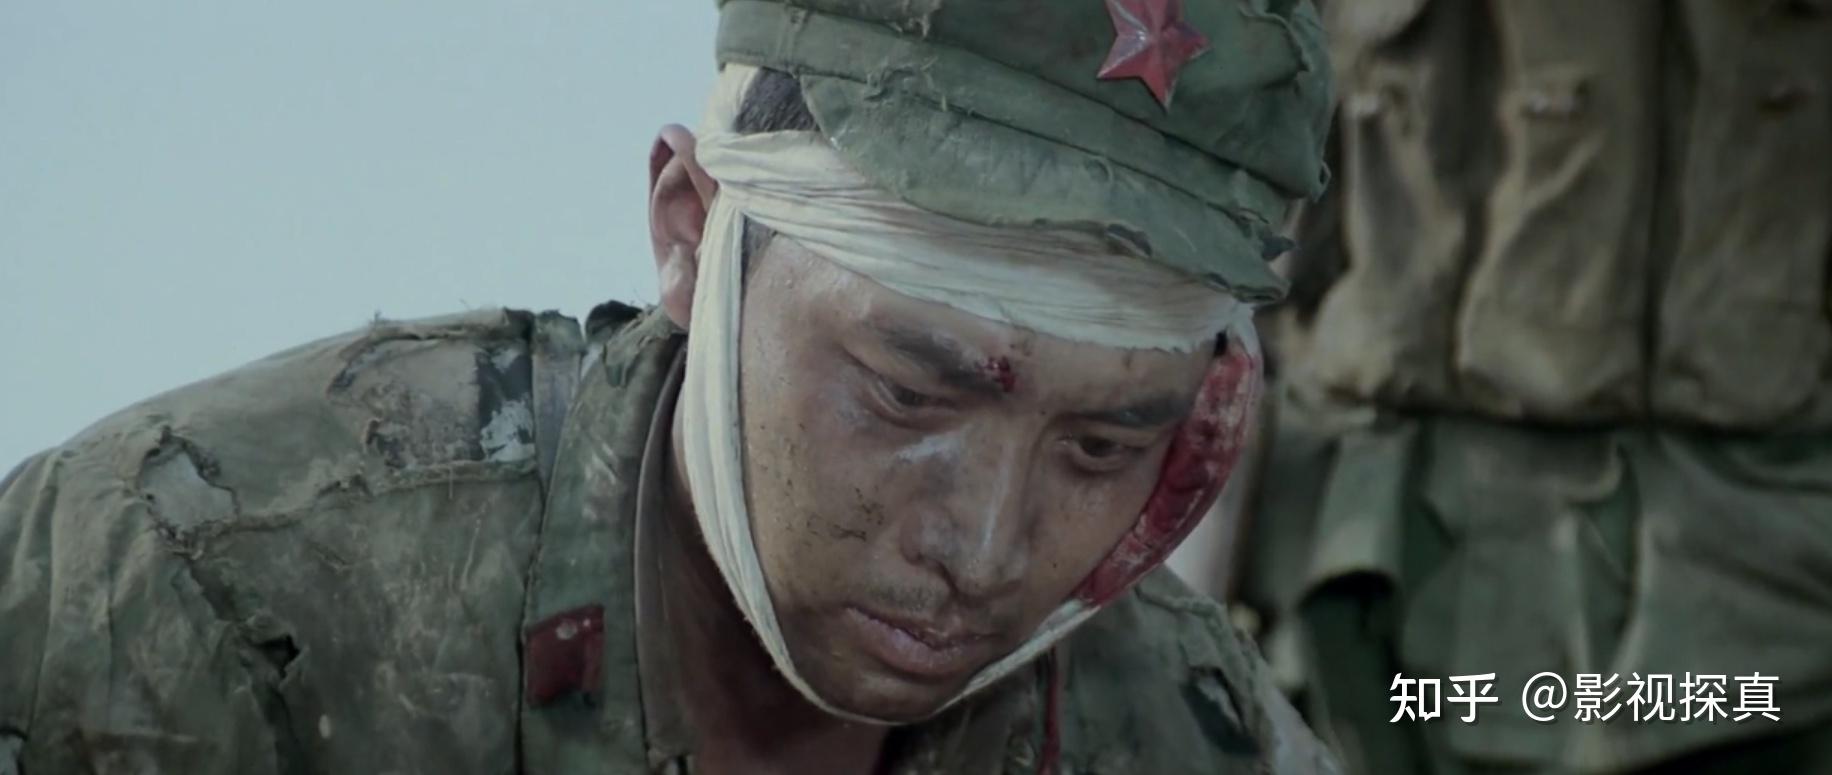 《高山下的花环》里,唐国强饰演的赵蒙生完成了人生的蜕变,在血与火的